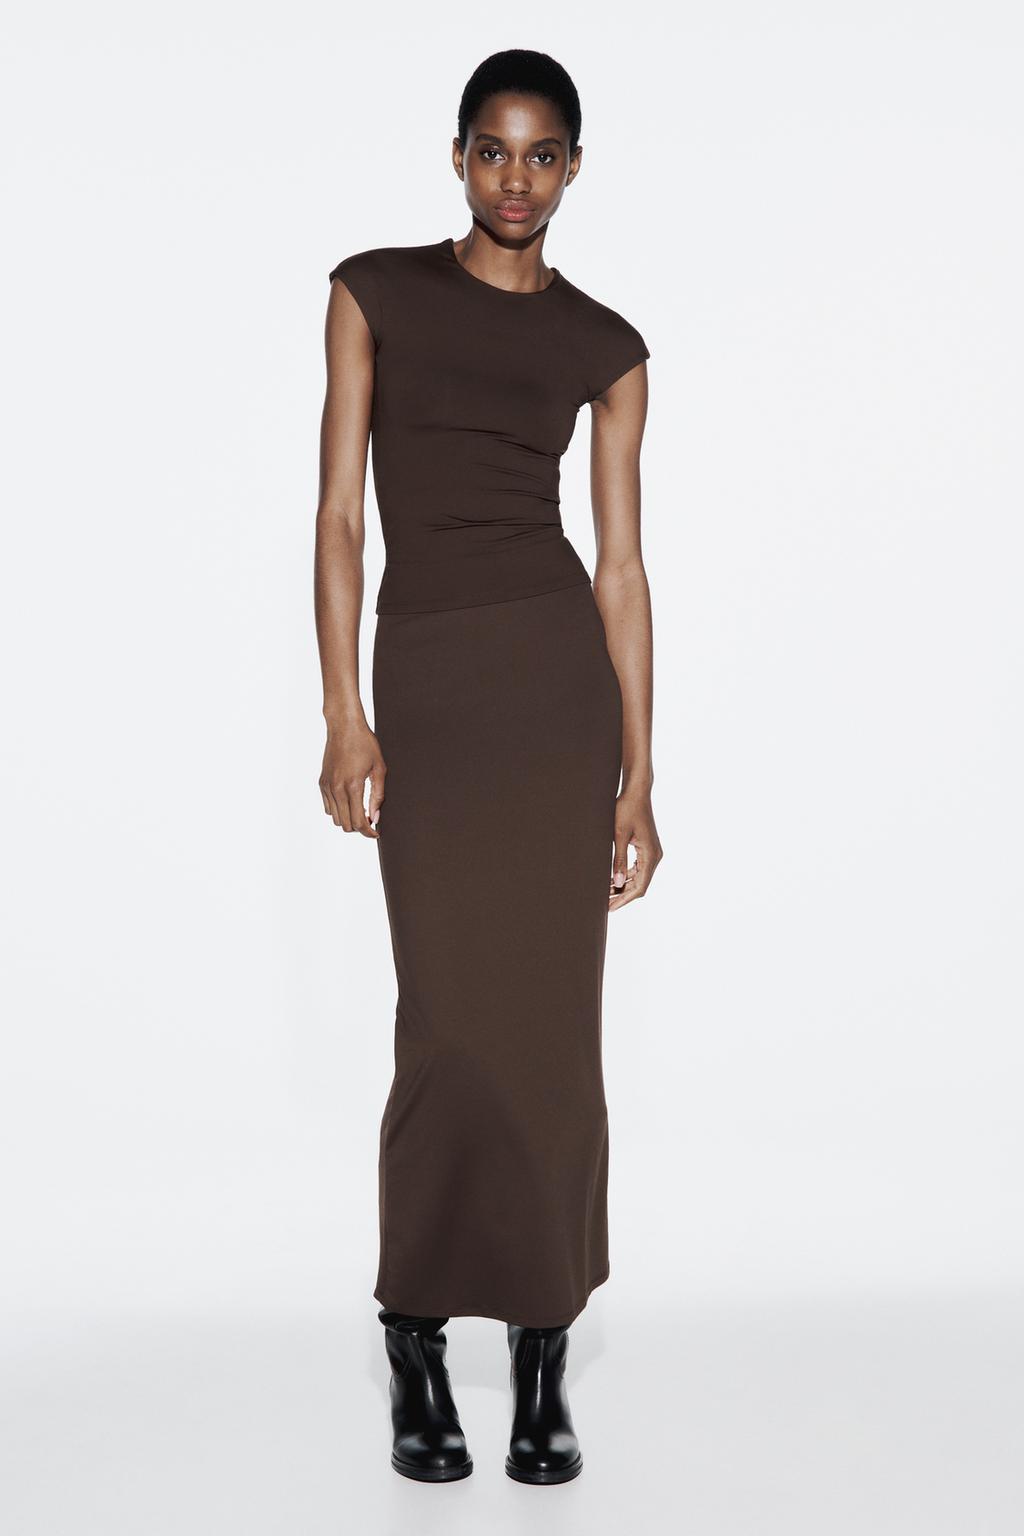 Юбка-карандаш из полиамида ZARA, коричневый женская длинная юбка плиссированная юбка трапеция с высокой талией универсальная облегающая юбка с эластичным поясом 2022